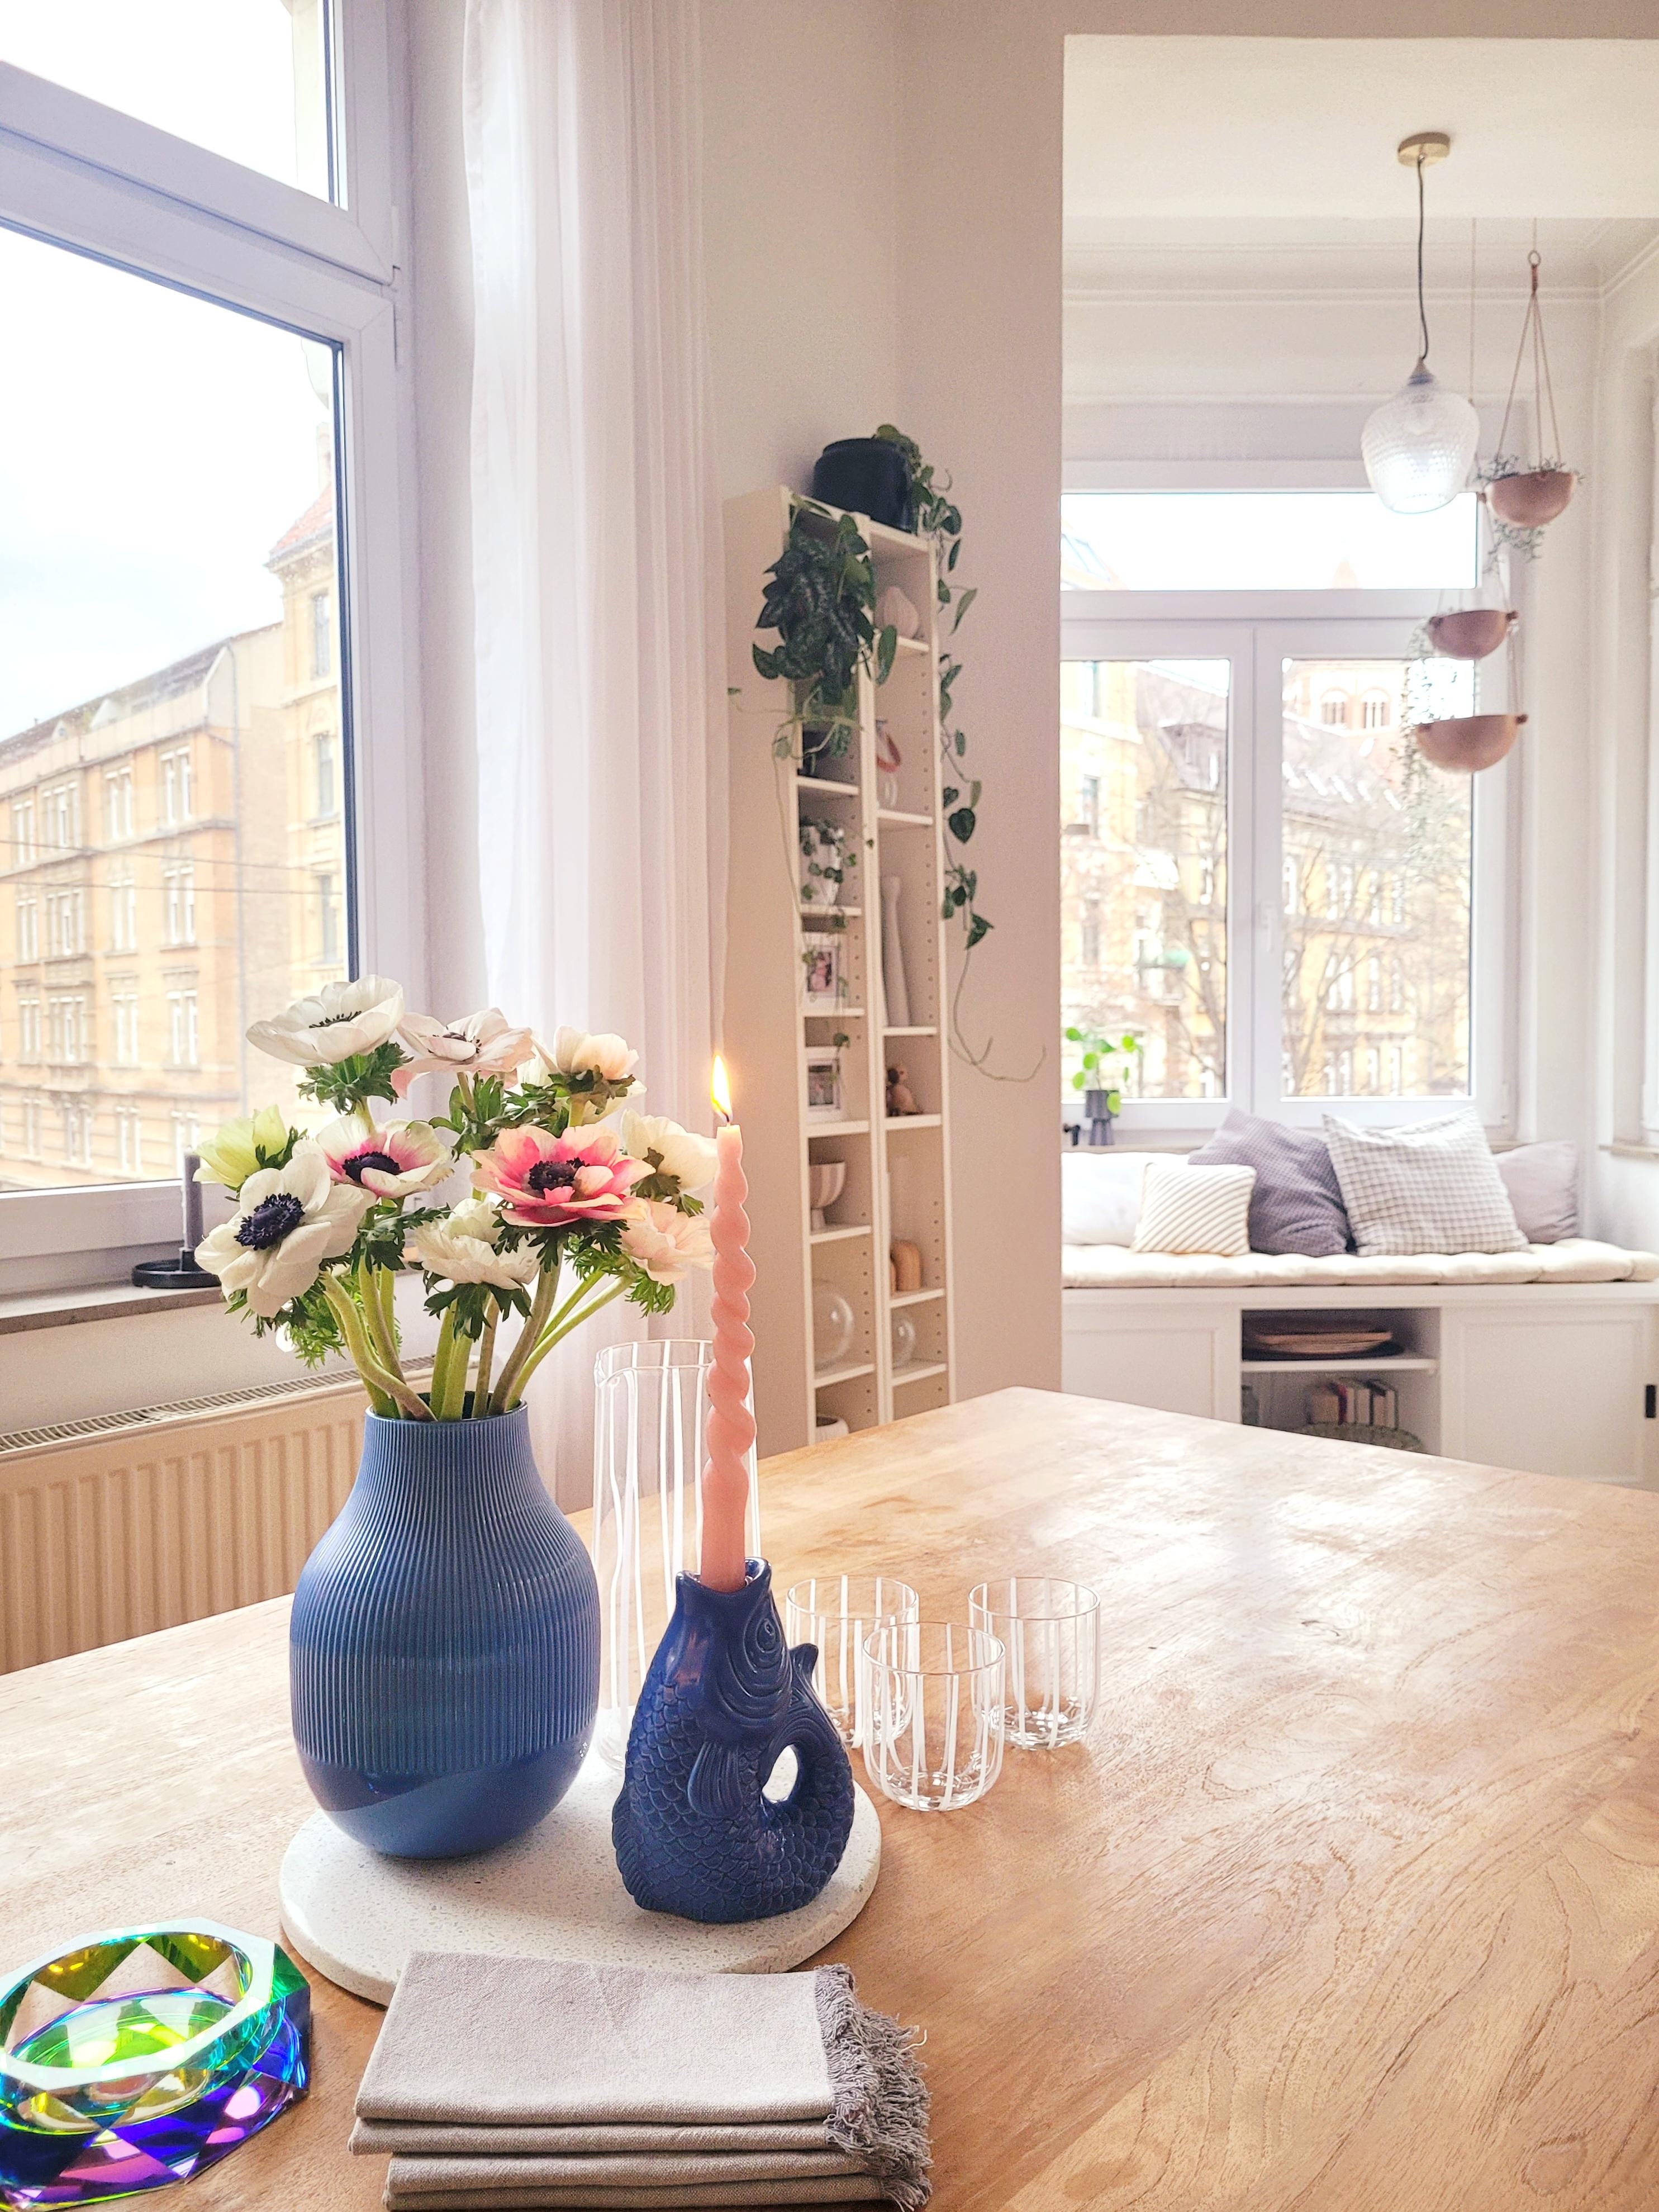 Happy Vasen Mittwoch!
#vase
#Kerzenhalter 
#Wohnzimmer 
#Altbau 
#Erker
#Tisch
#Wohnzimmer 
#schale
#blau
#Blumen 

